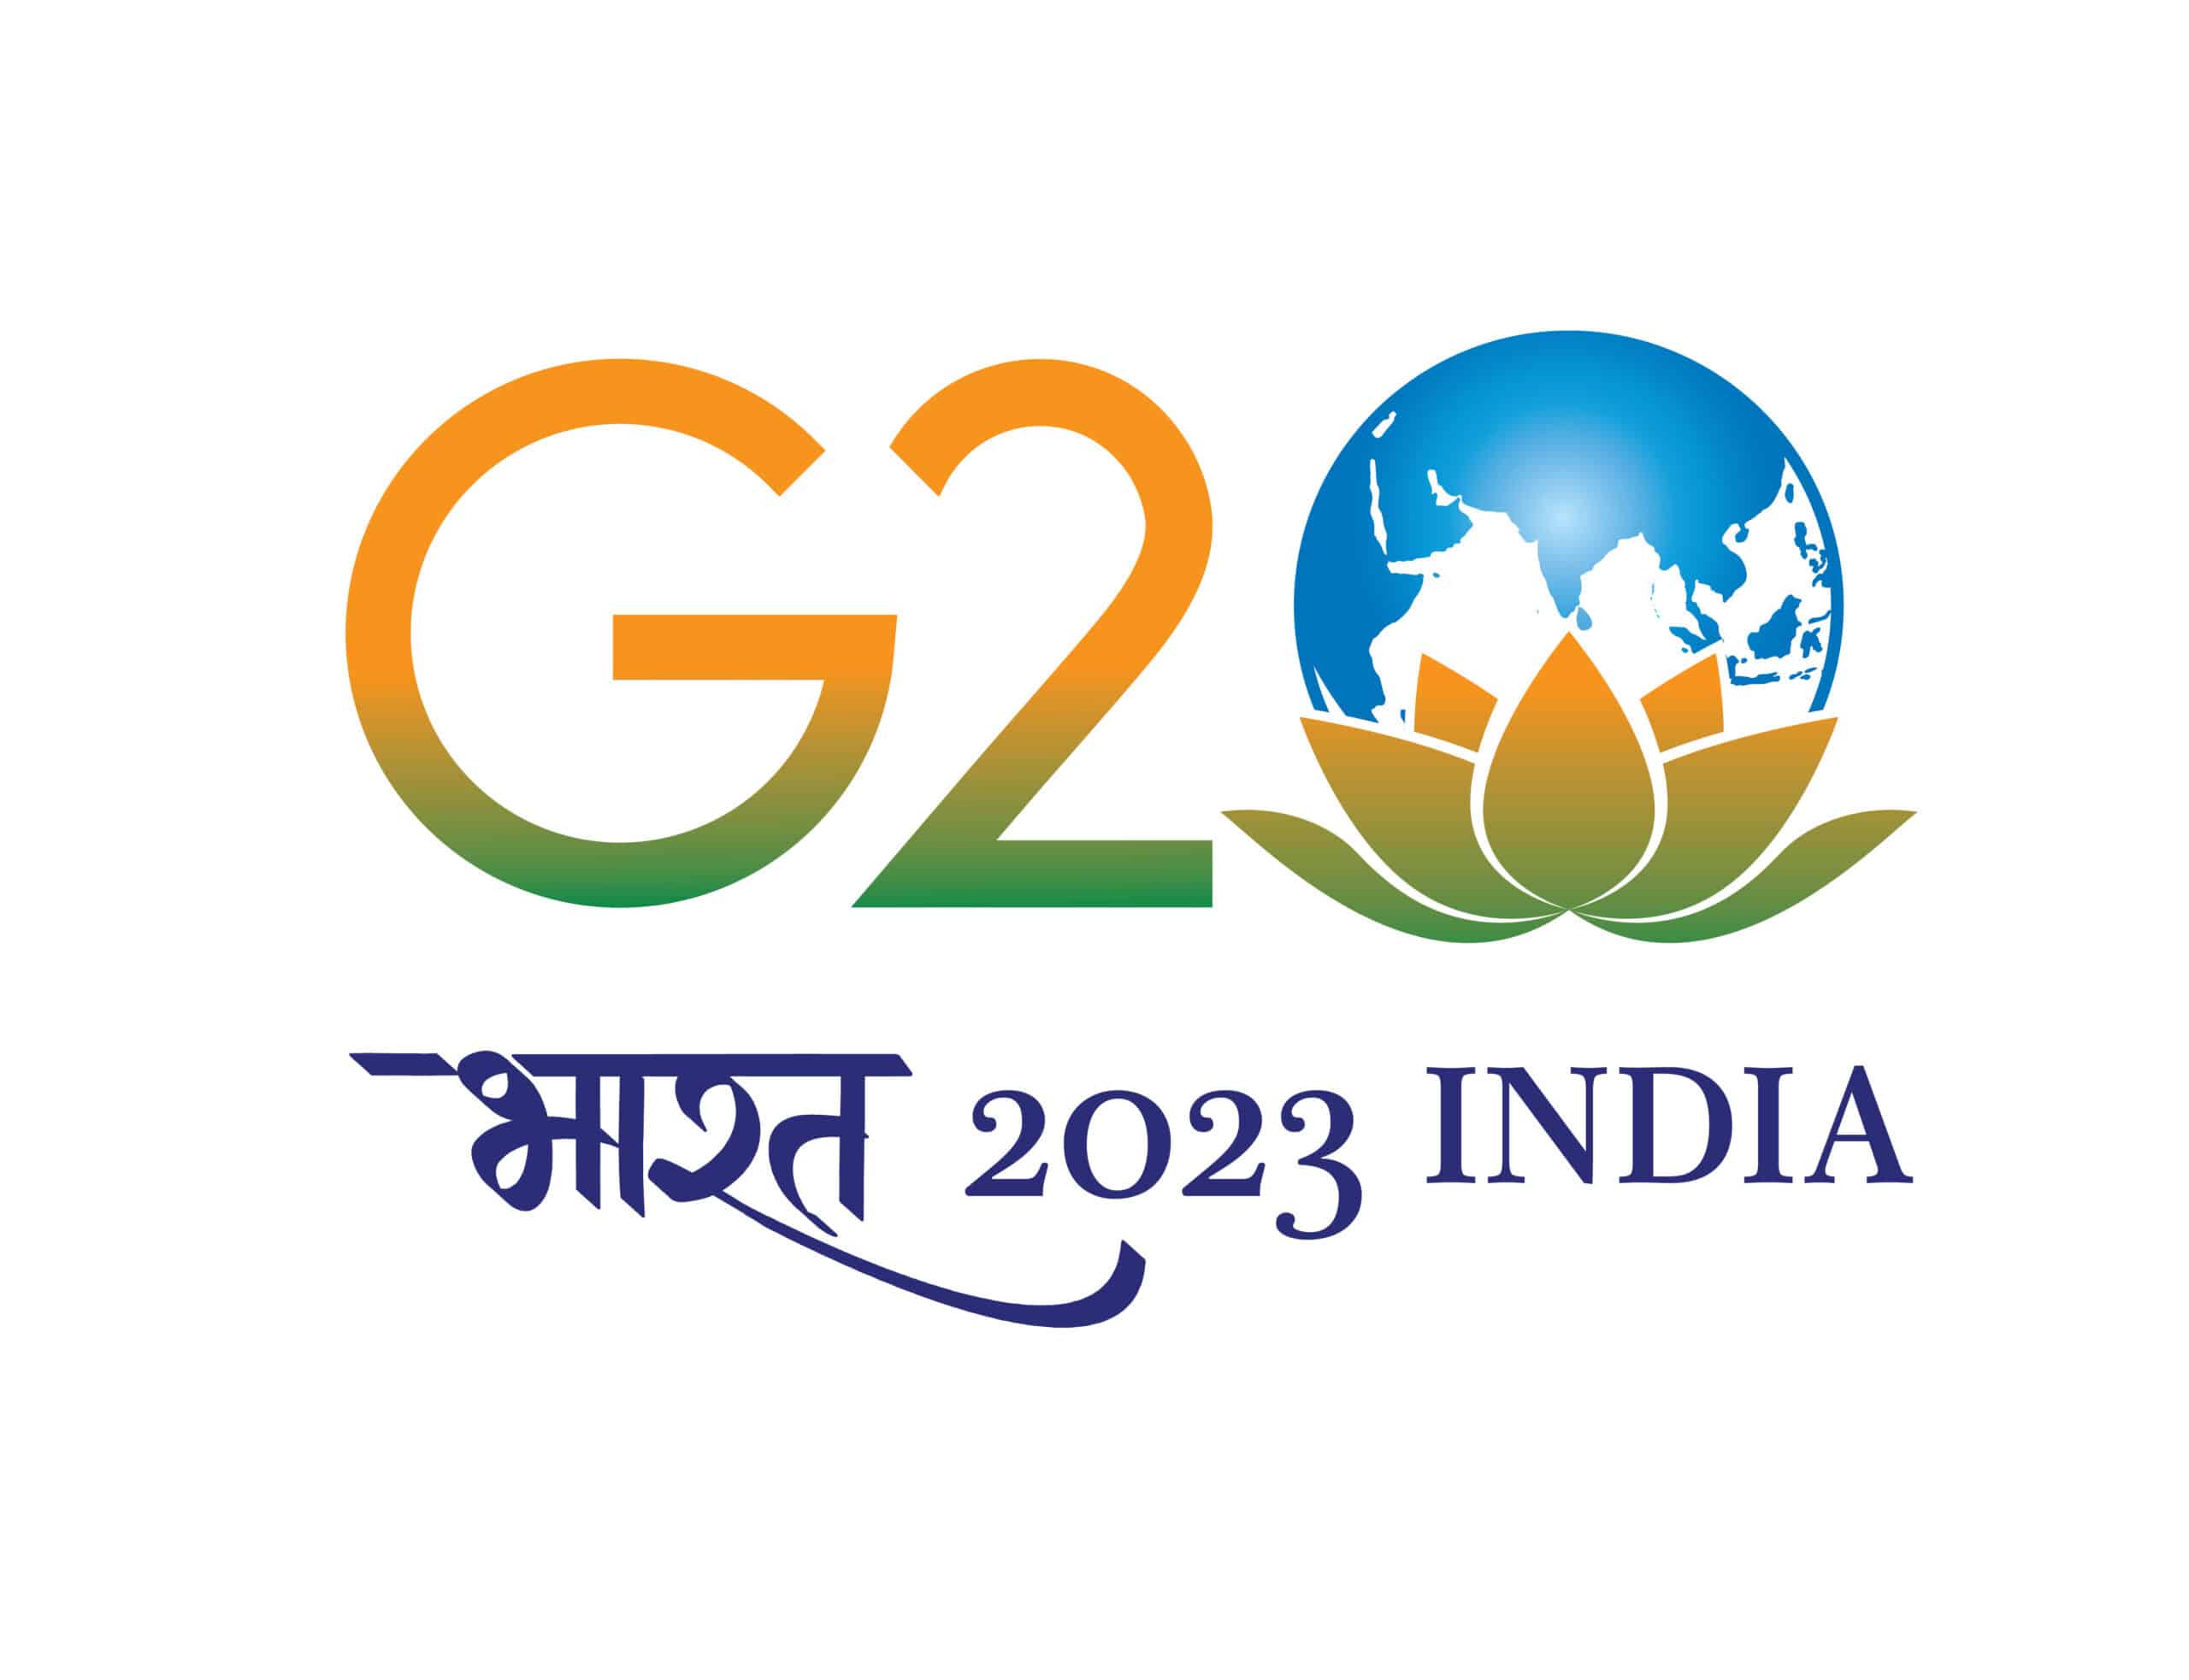 G20 summit 2023 India में नई दिल्ली में 9 और 10 सितंबर को आयोजित होने जा रहा है और इस बार के G20 सम्मेलन का लोगो (g20 logo india 2023) भारत के राष्ट्रीय ध्वज के जीवंत रंगों - केसरिया, सफेद और हरे, और नीले रंग से प्रेरित होगा. Image: g20.org